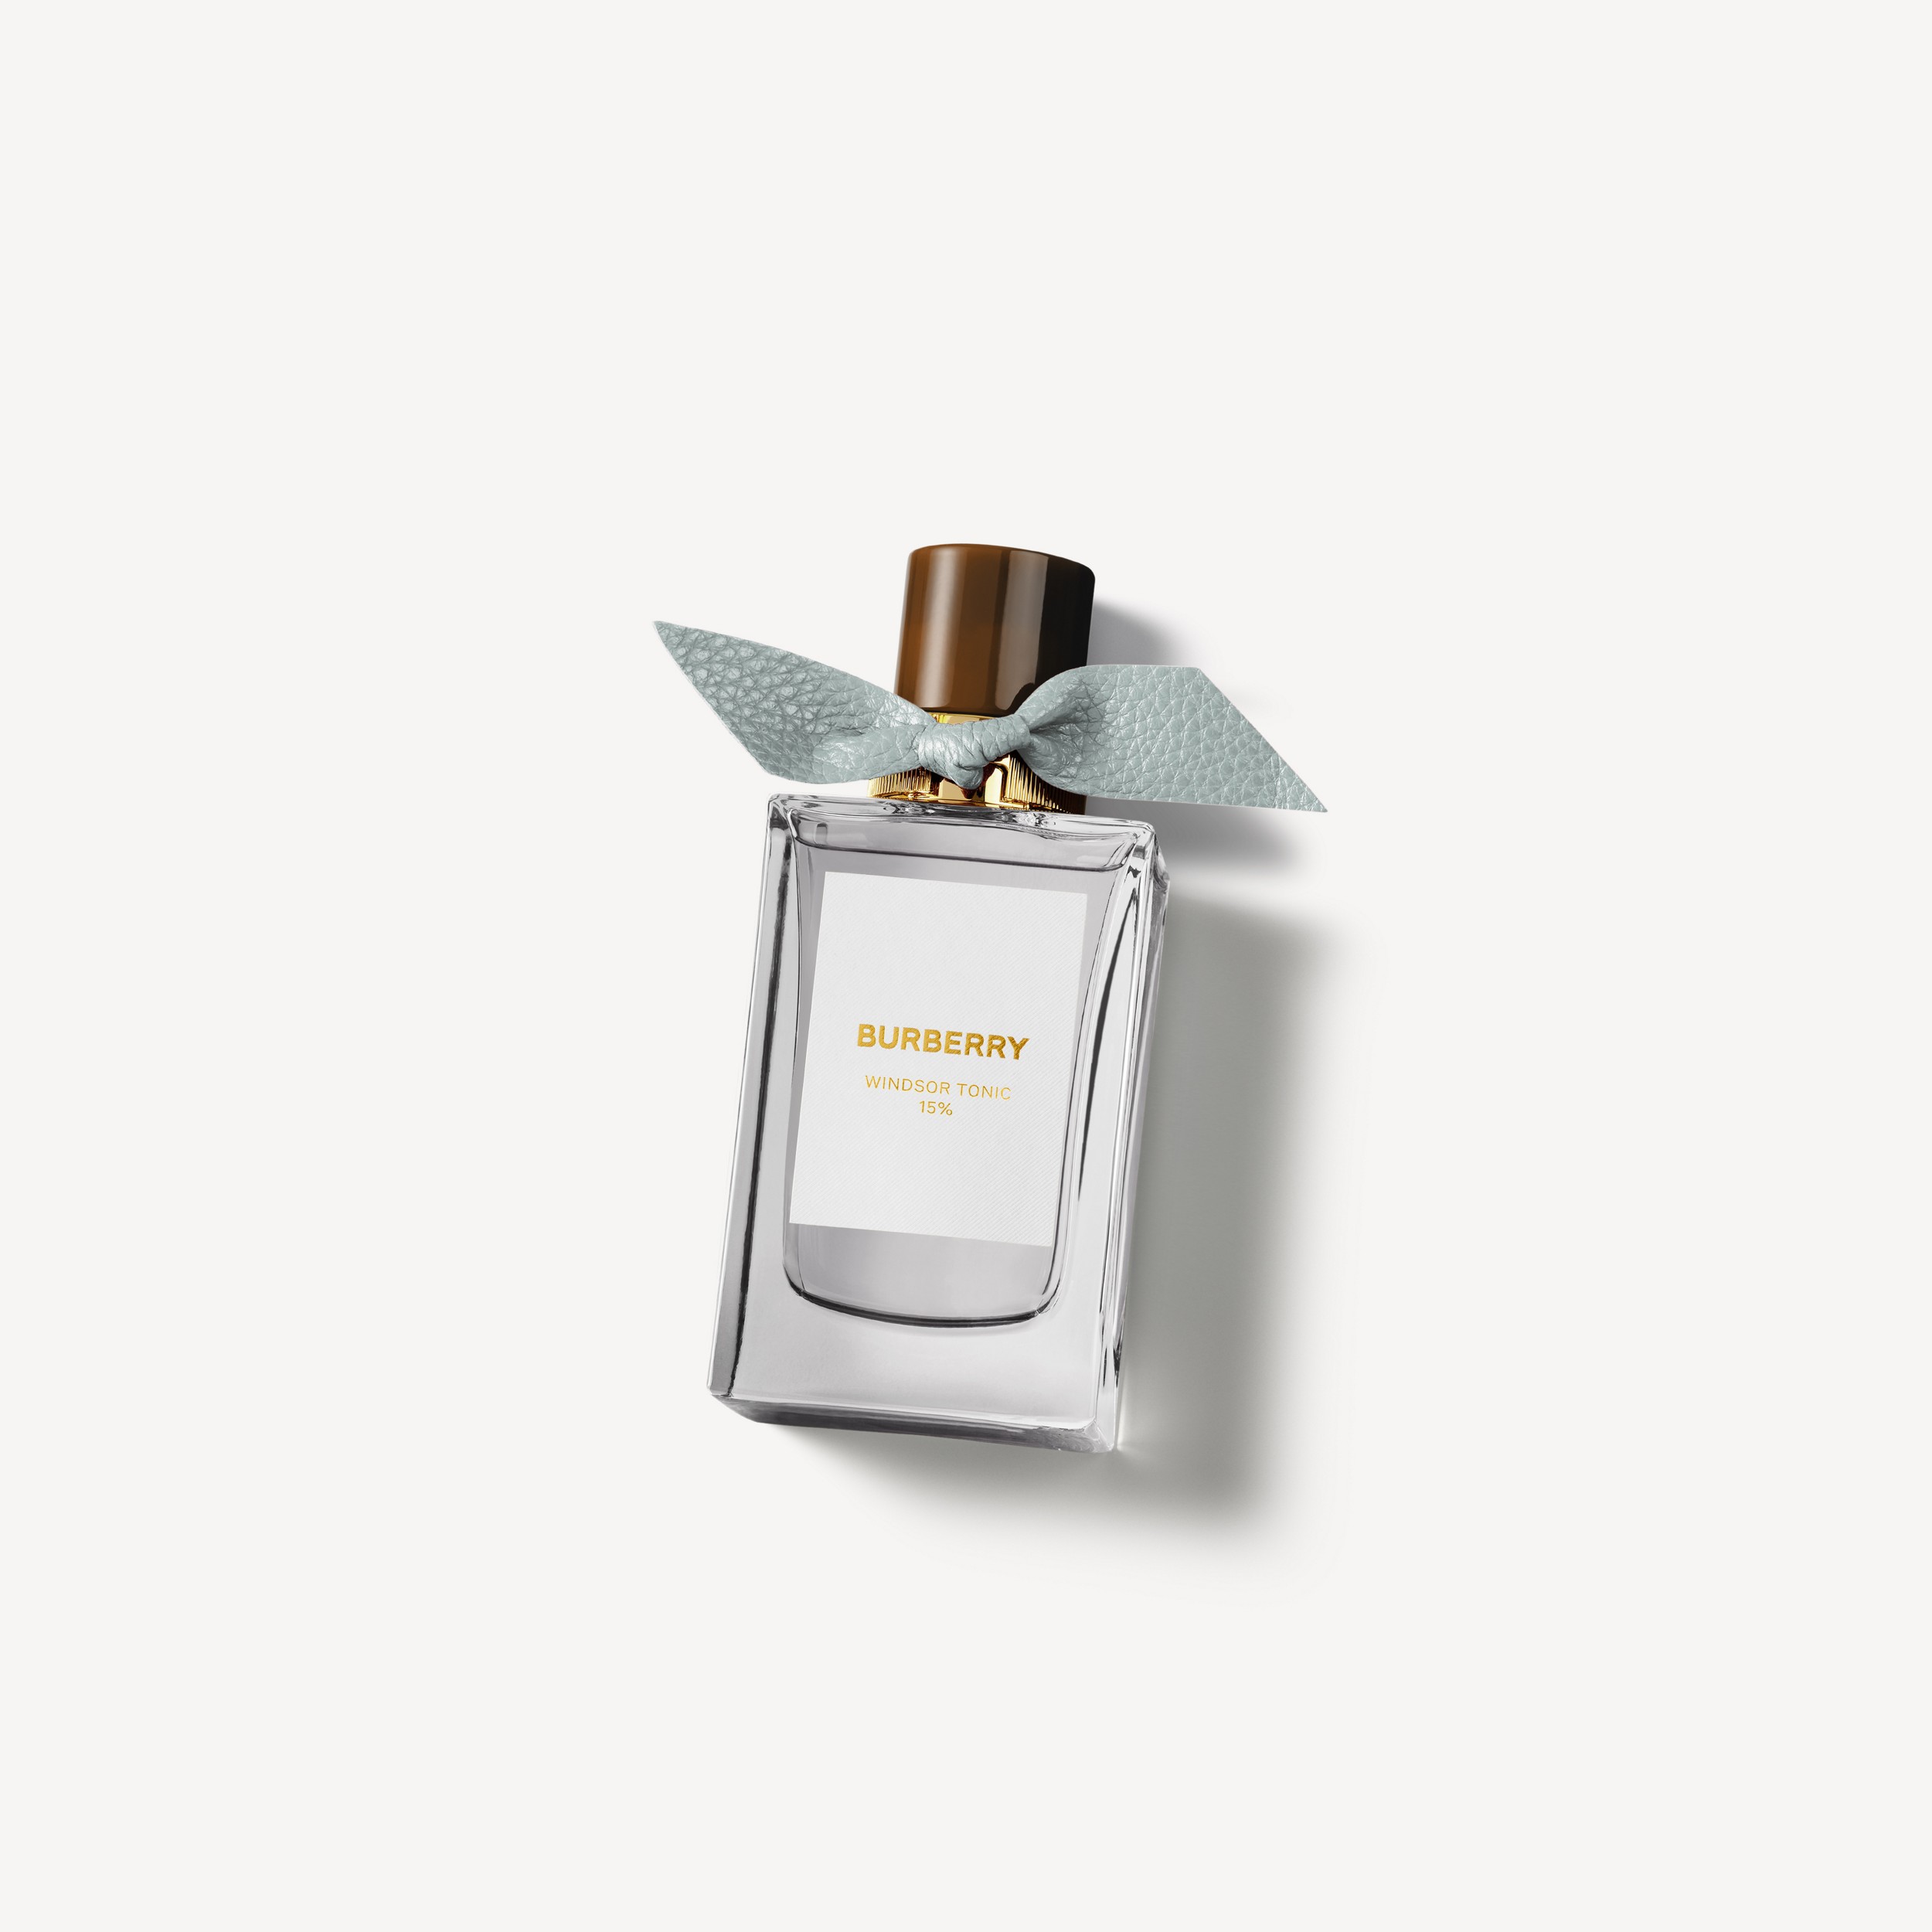 Burberry Signatures Eau de Parfum de 100 ml - Windsor Tonic | Burberry® oficial - 1